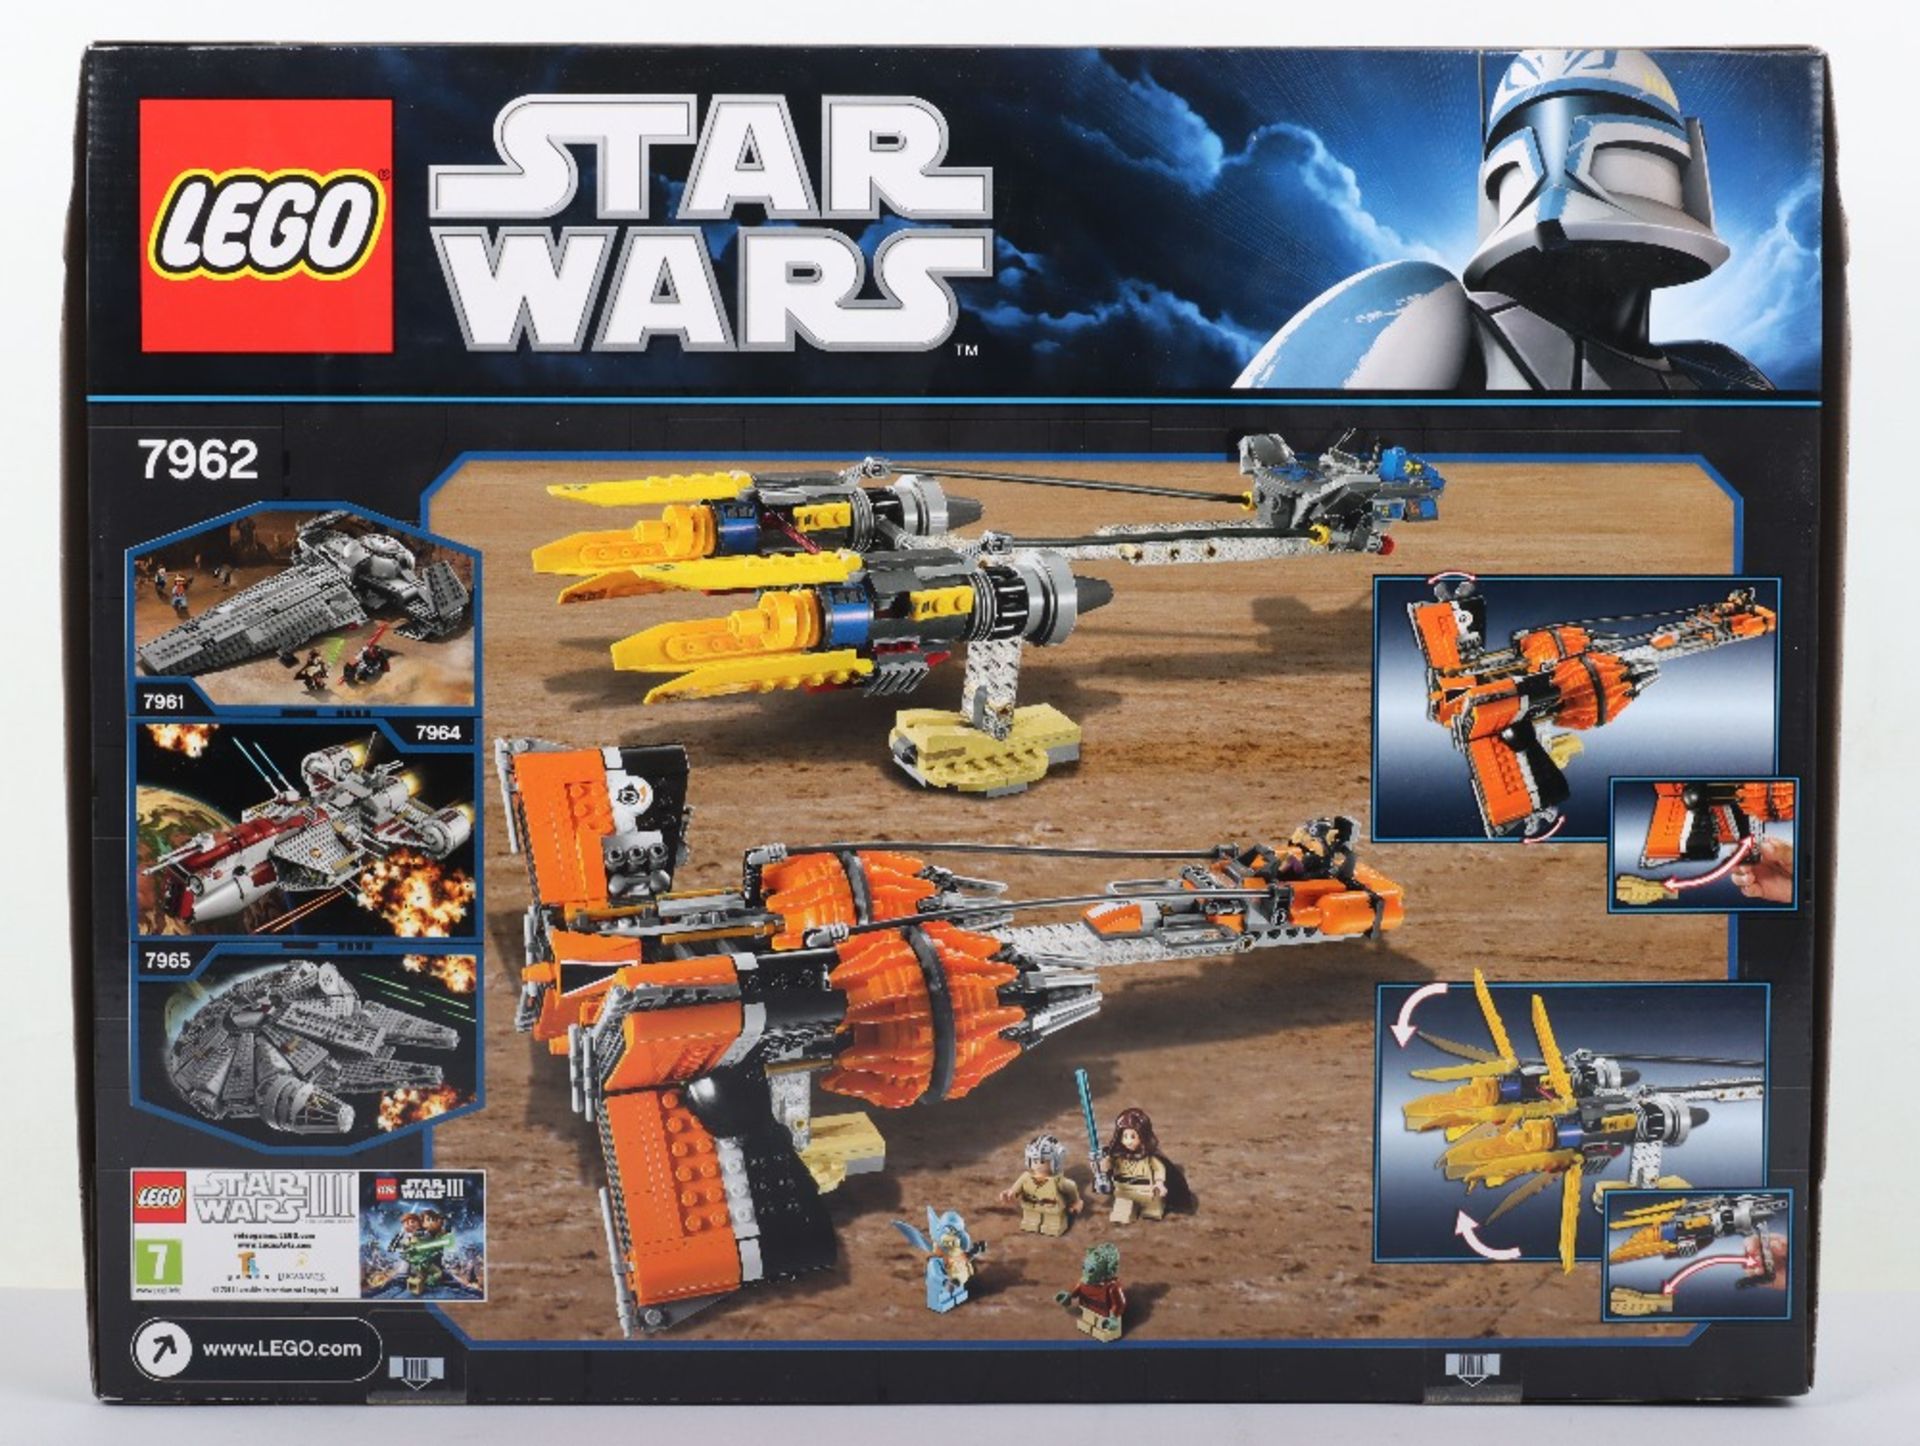 Lego Star Wars 7962 Anakin’s & Sebulba’s Podracers sealed boxed set - Image 2 of 7